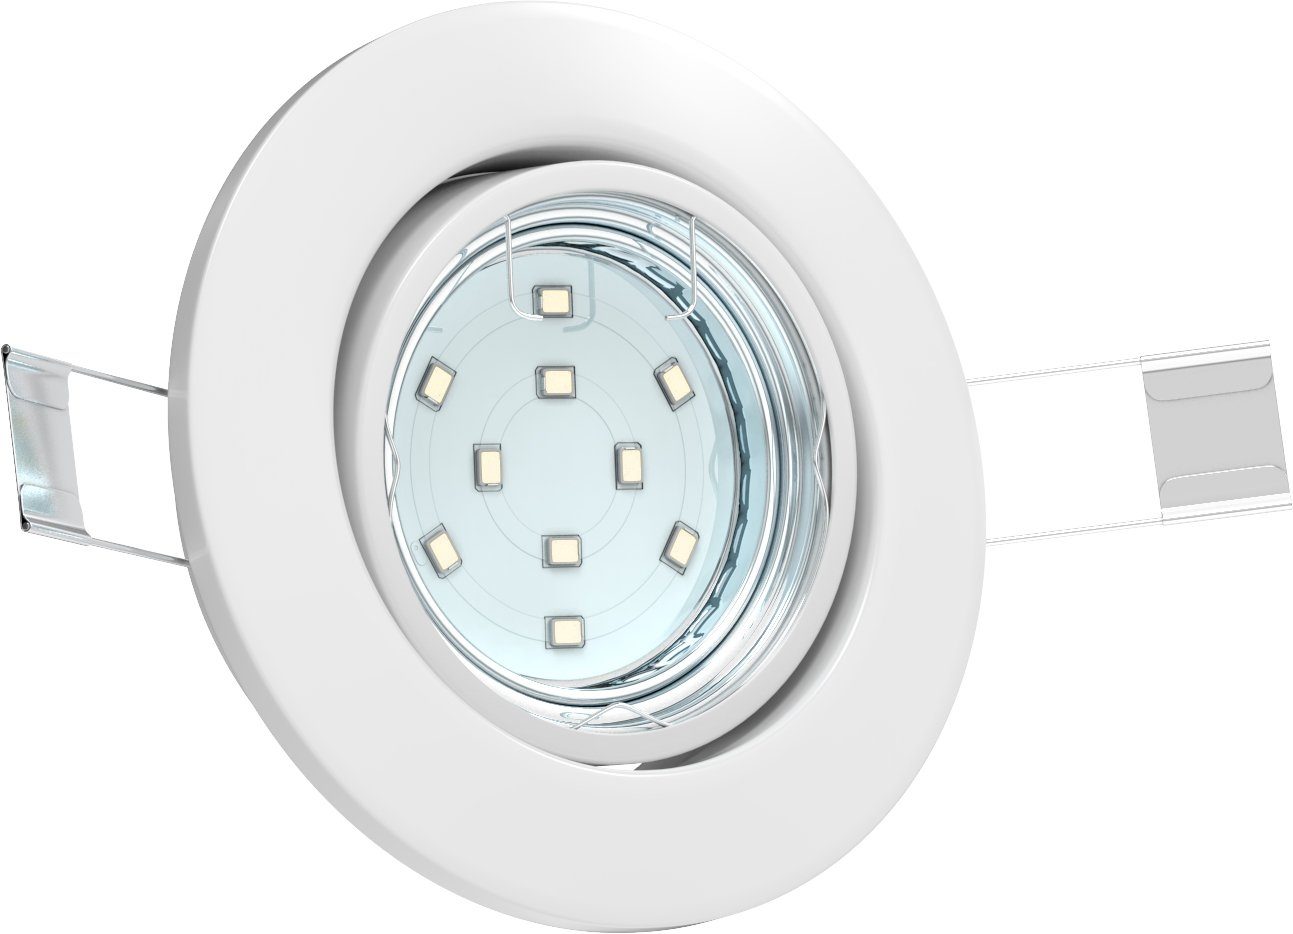 Decken-Spot 6er Warmweiß, LED Leuchtmittel Einbauspot Einbauleuchte wechselbar, weiß Einbaustrahler LED Hila, SET schwenkbar B.K.Licht GU10